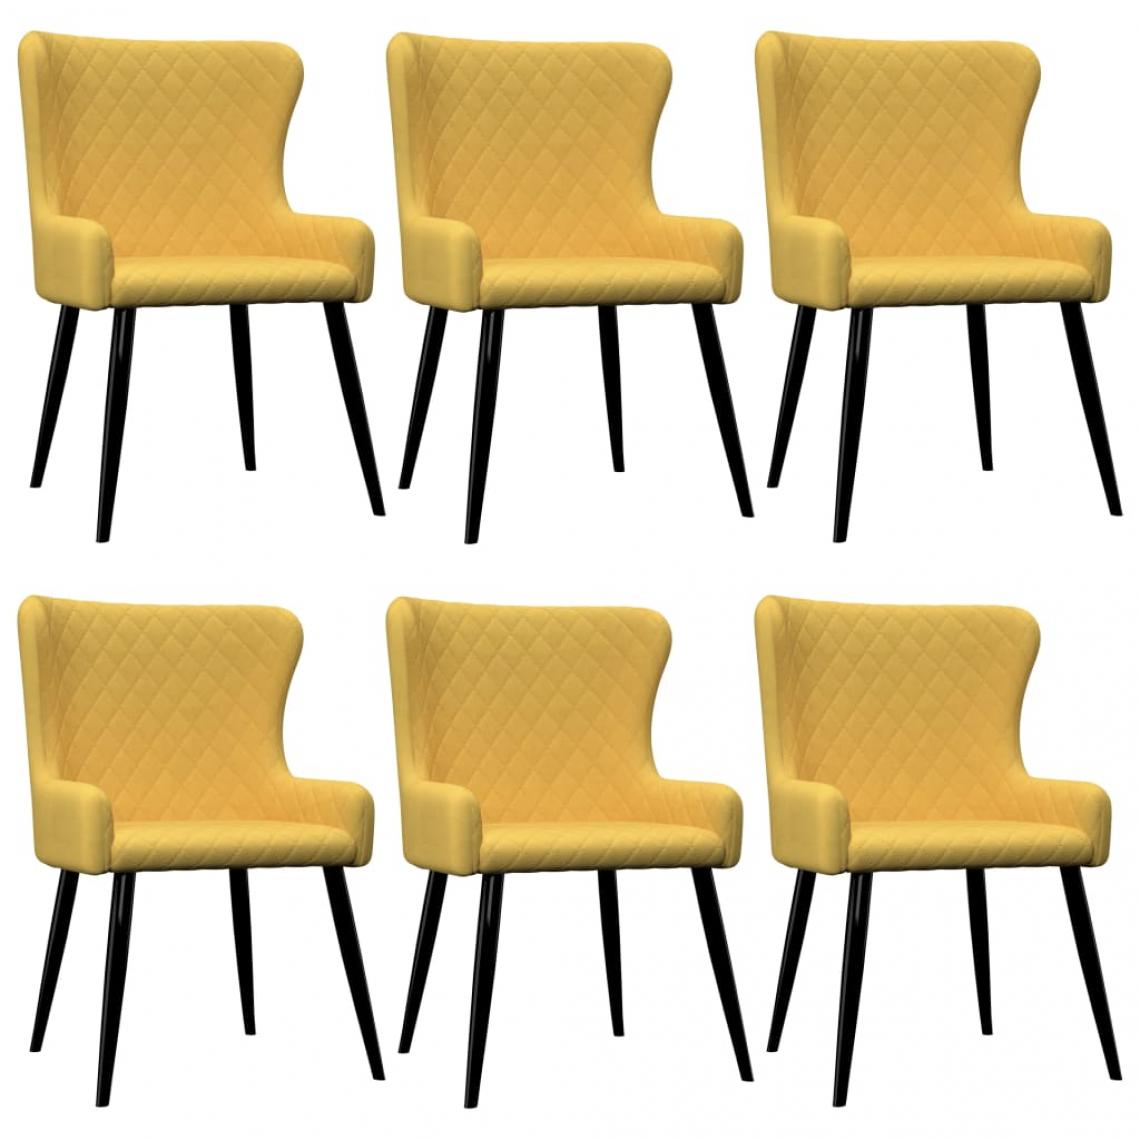 Decoshop26 - Lot de 6 chaises de salle à manger cuisine design moderne tissu jaune CDS022537 - Chaises